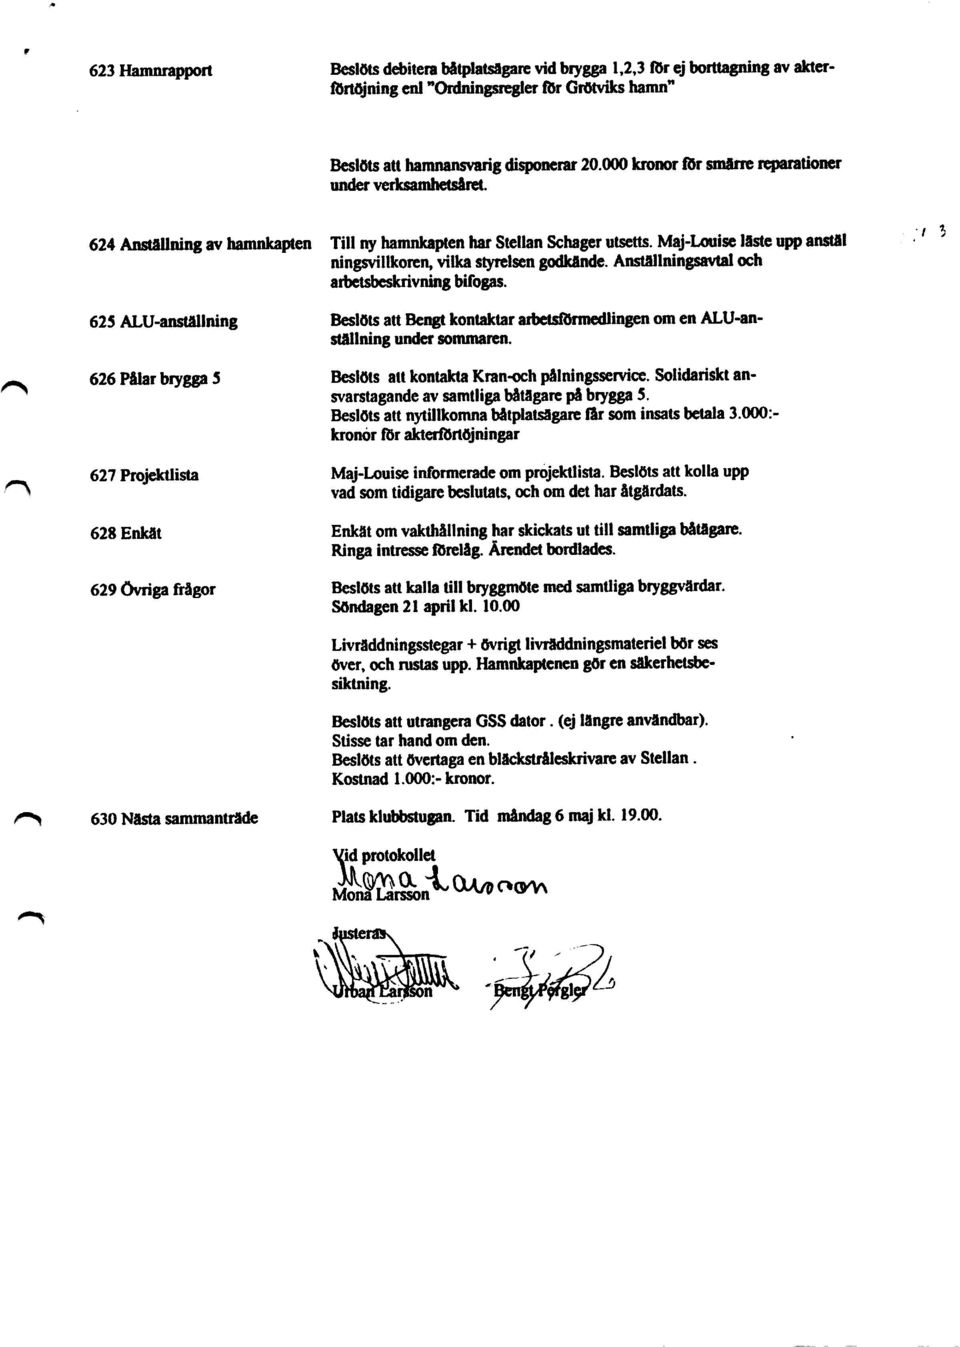 Anstäilningsavtal och arbetsbeskrivning bifogas. 625 ALU-ansNllning Beslöts att Bengt kontaktar arbetsförmedlingen om en ALU-ansNllning under sommaren.